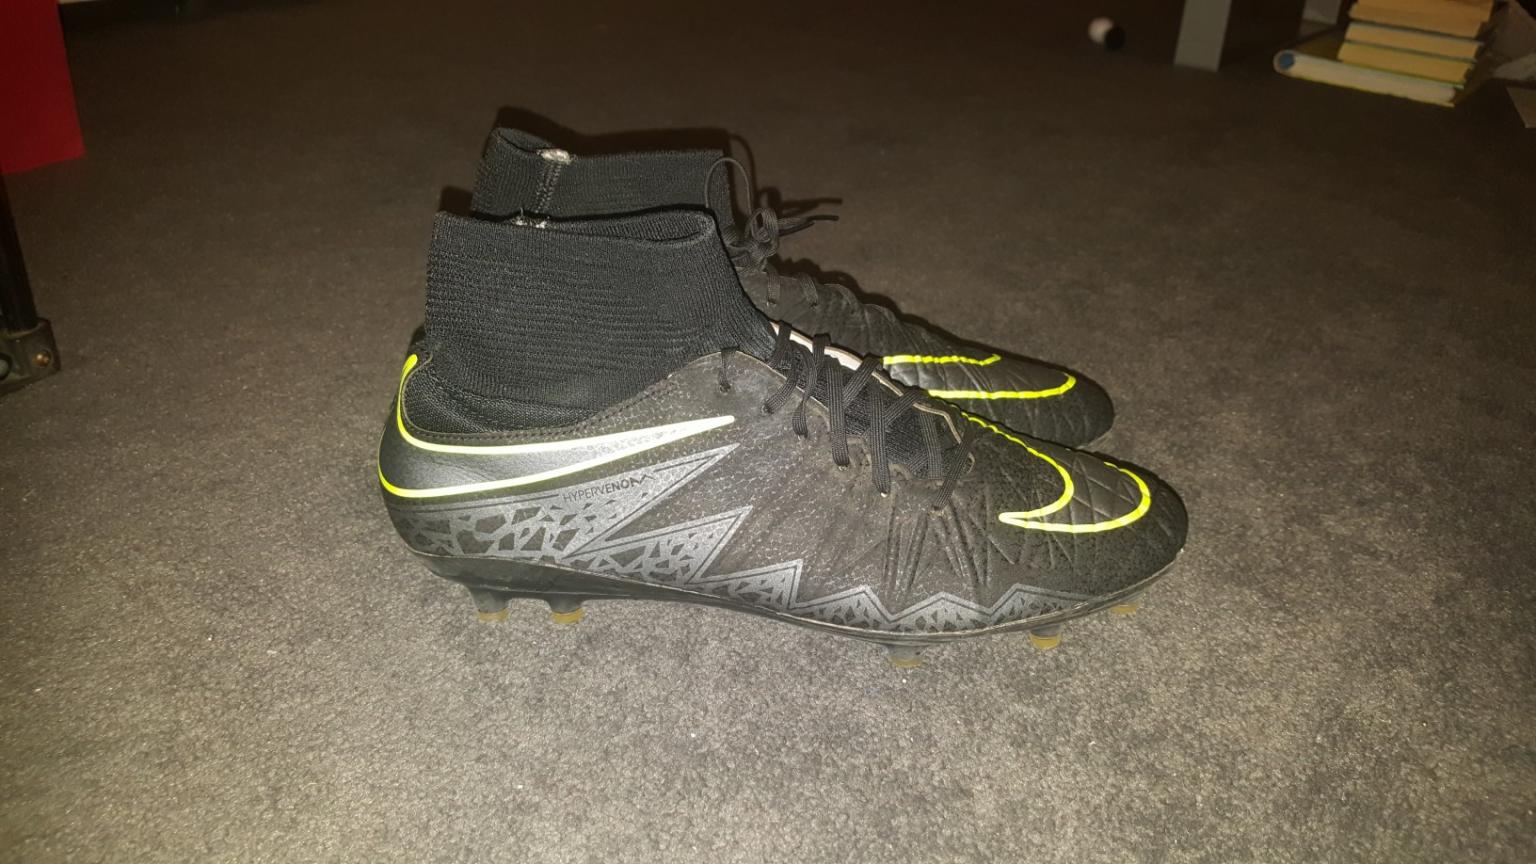 Nike Men's Hypervenomx Phelon Iii Ic Football Boots, Green (Elctrc